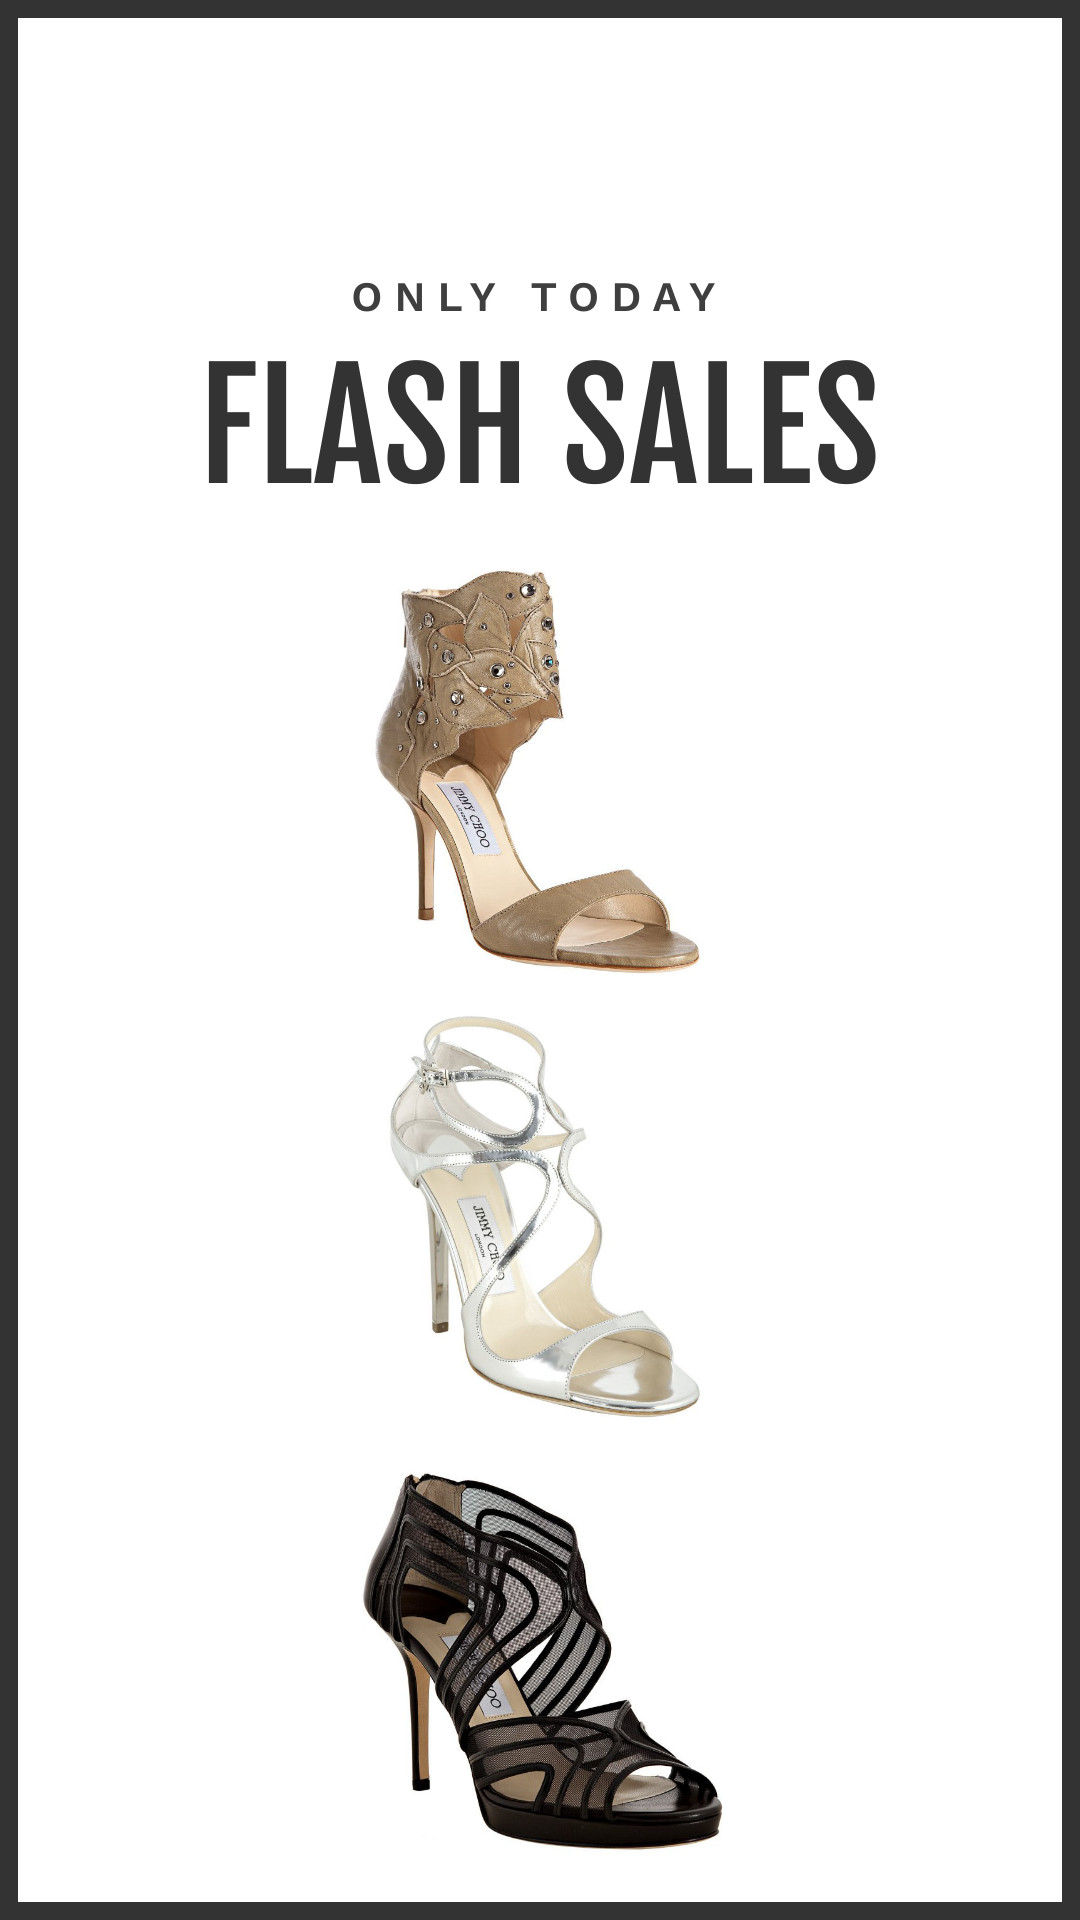 Women Shoes Flash Sales Inline Rectangle 300x250